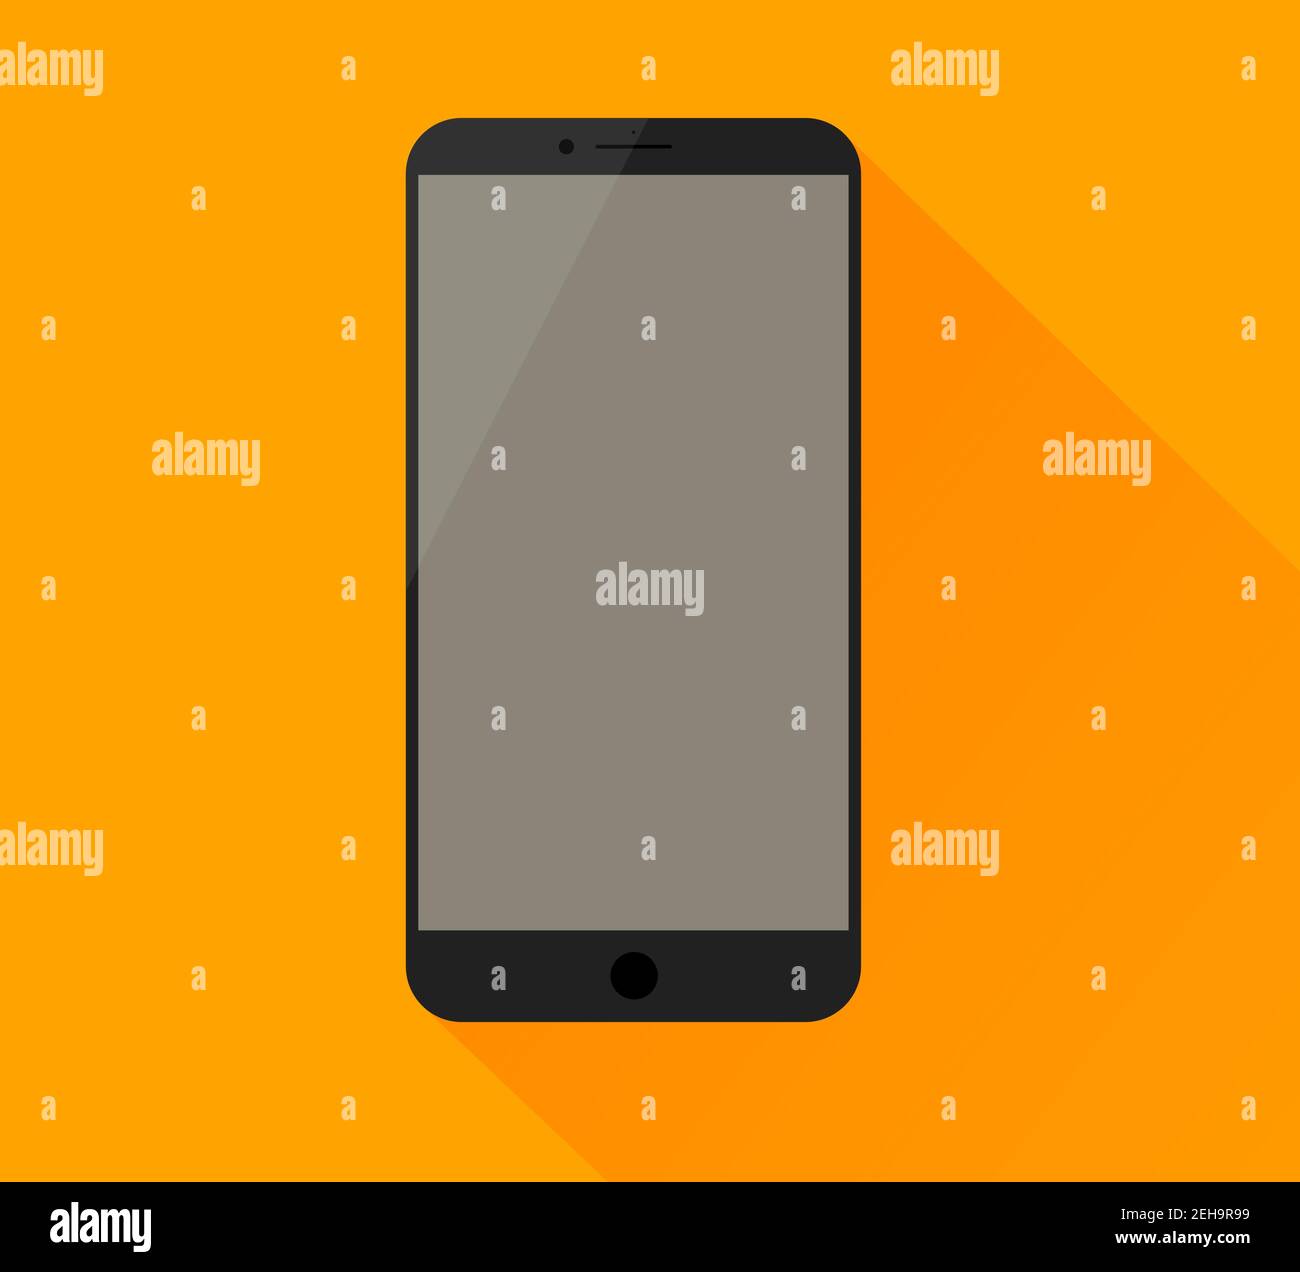 Maquette de smartphone simple avec écran vide et clignotement. Ombre légère et fond jaune. Illustration de Vecteur